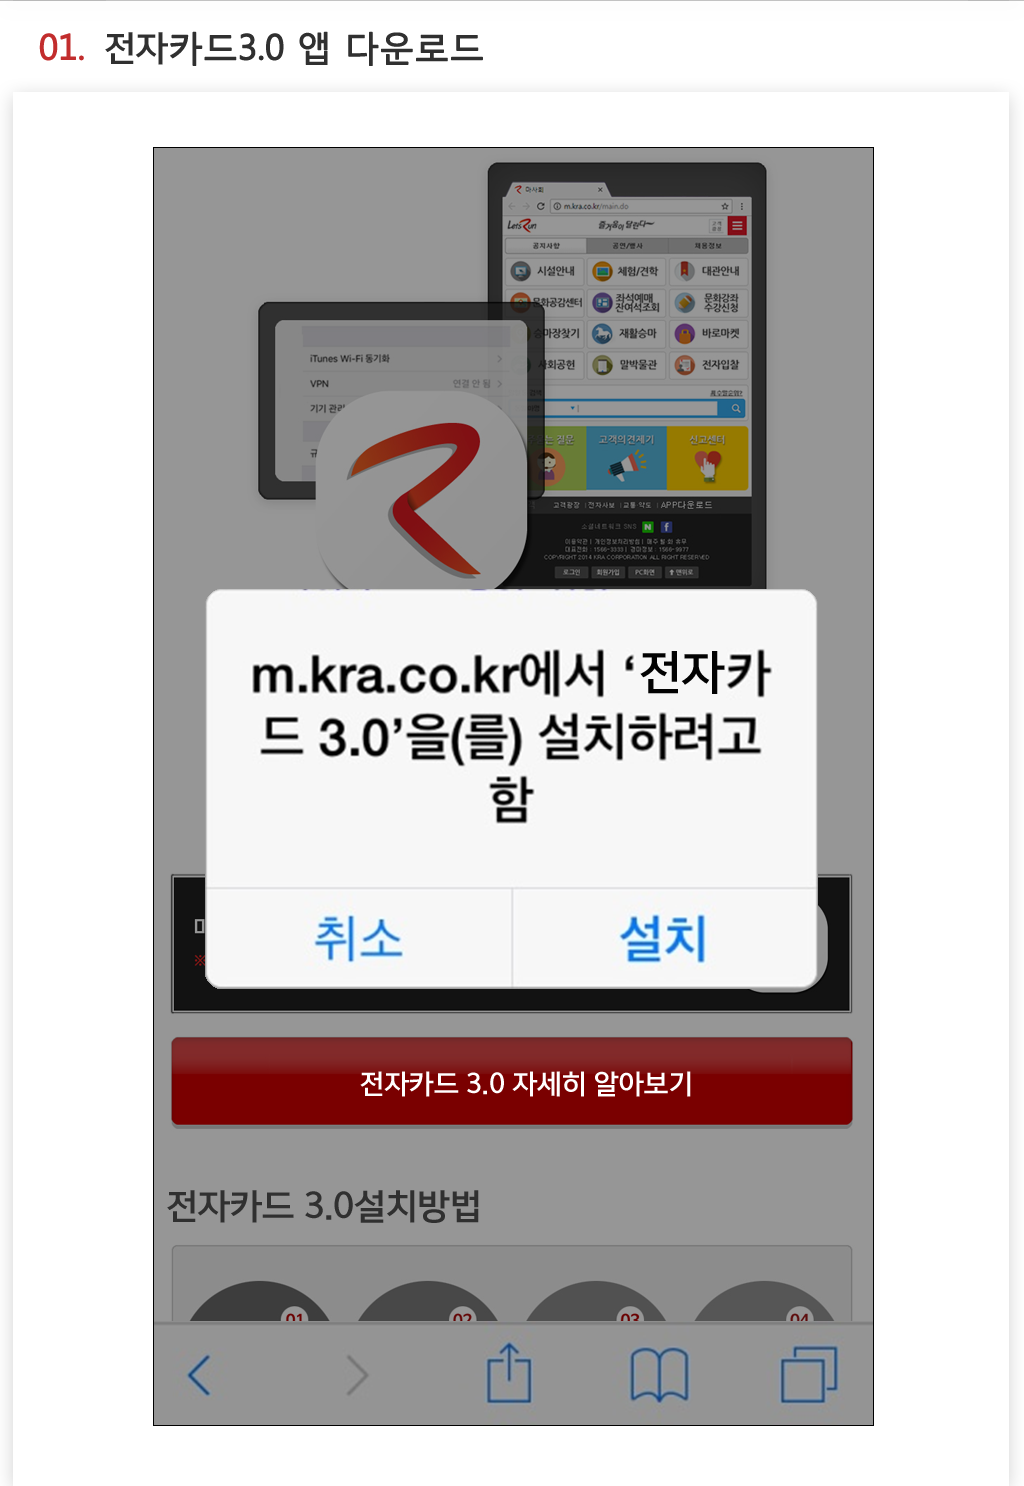 01.마이카드3.0 앱 다운로드-02.기기관리설정